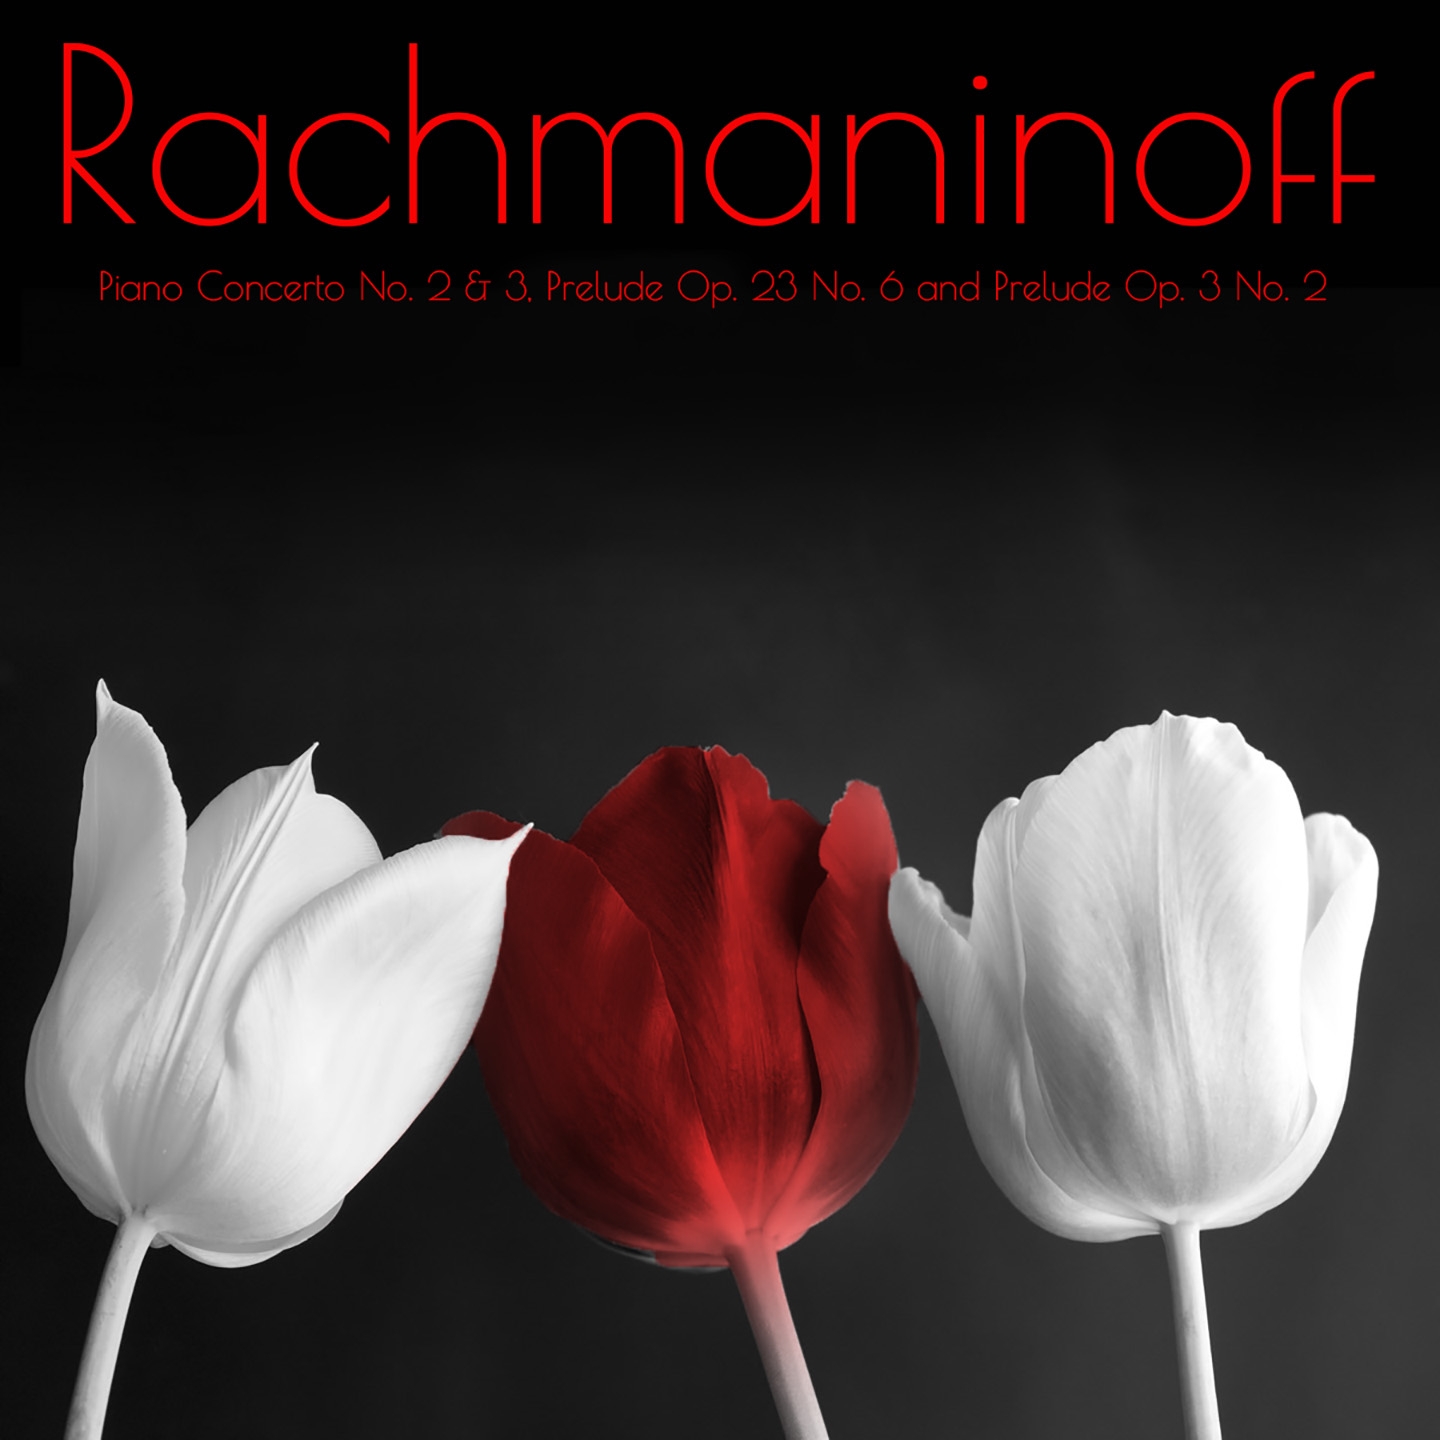 Rachmaninoff Piano Concerto No. 2 & 3, Prelude Op. 23 No. 6 and Prelude Op. 3 No. 2